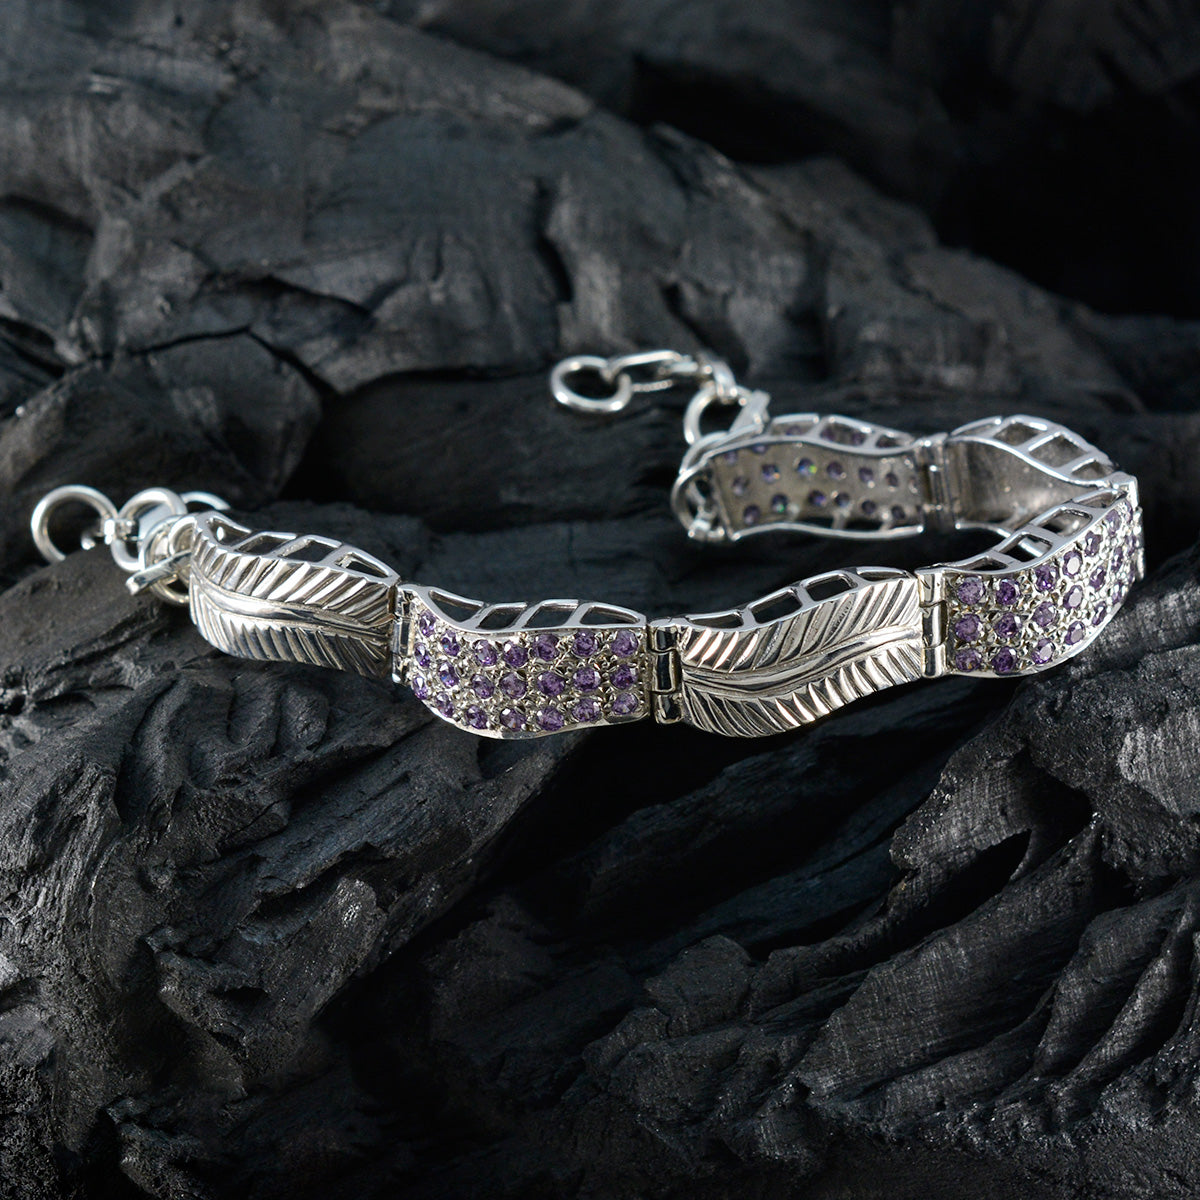 riyo komplett 925 sterling silver armband för kvinnor ametist armband bezel inställning armband med länk charm armband l storlek 6-8,5 tum.